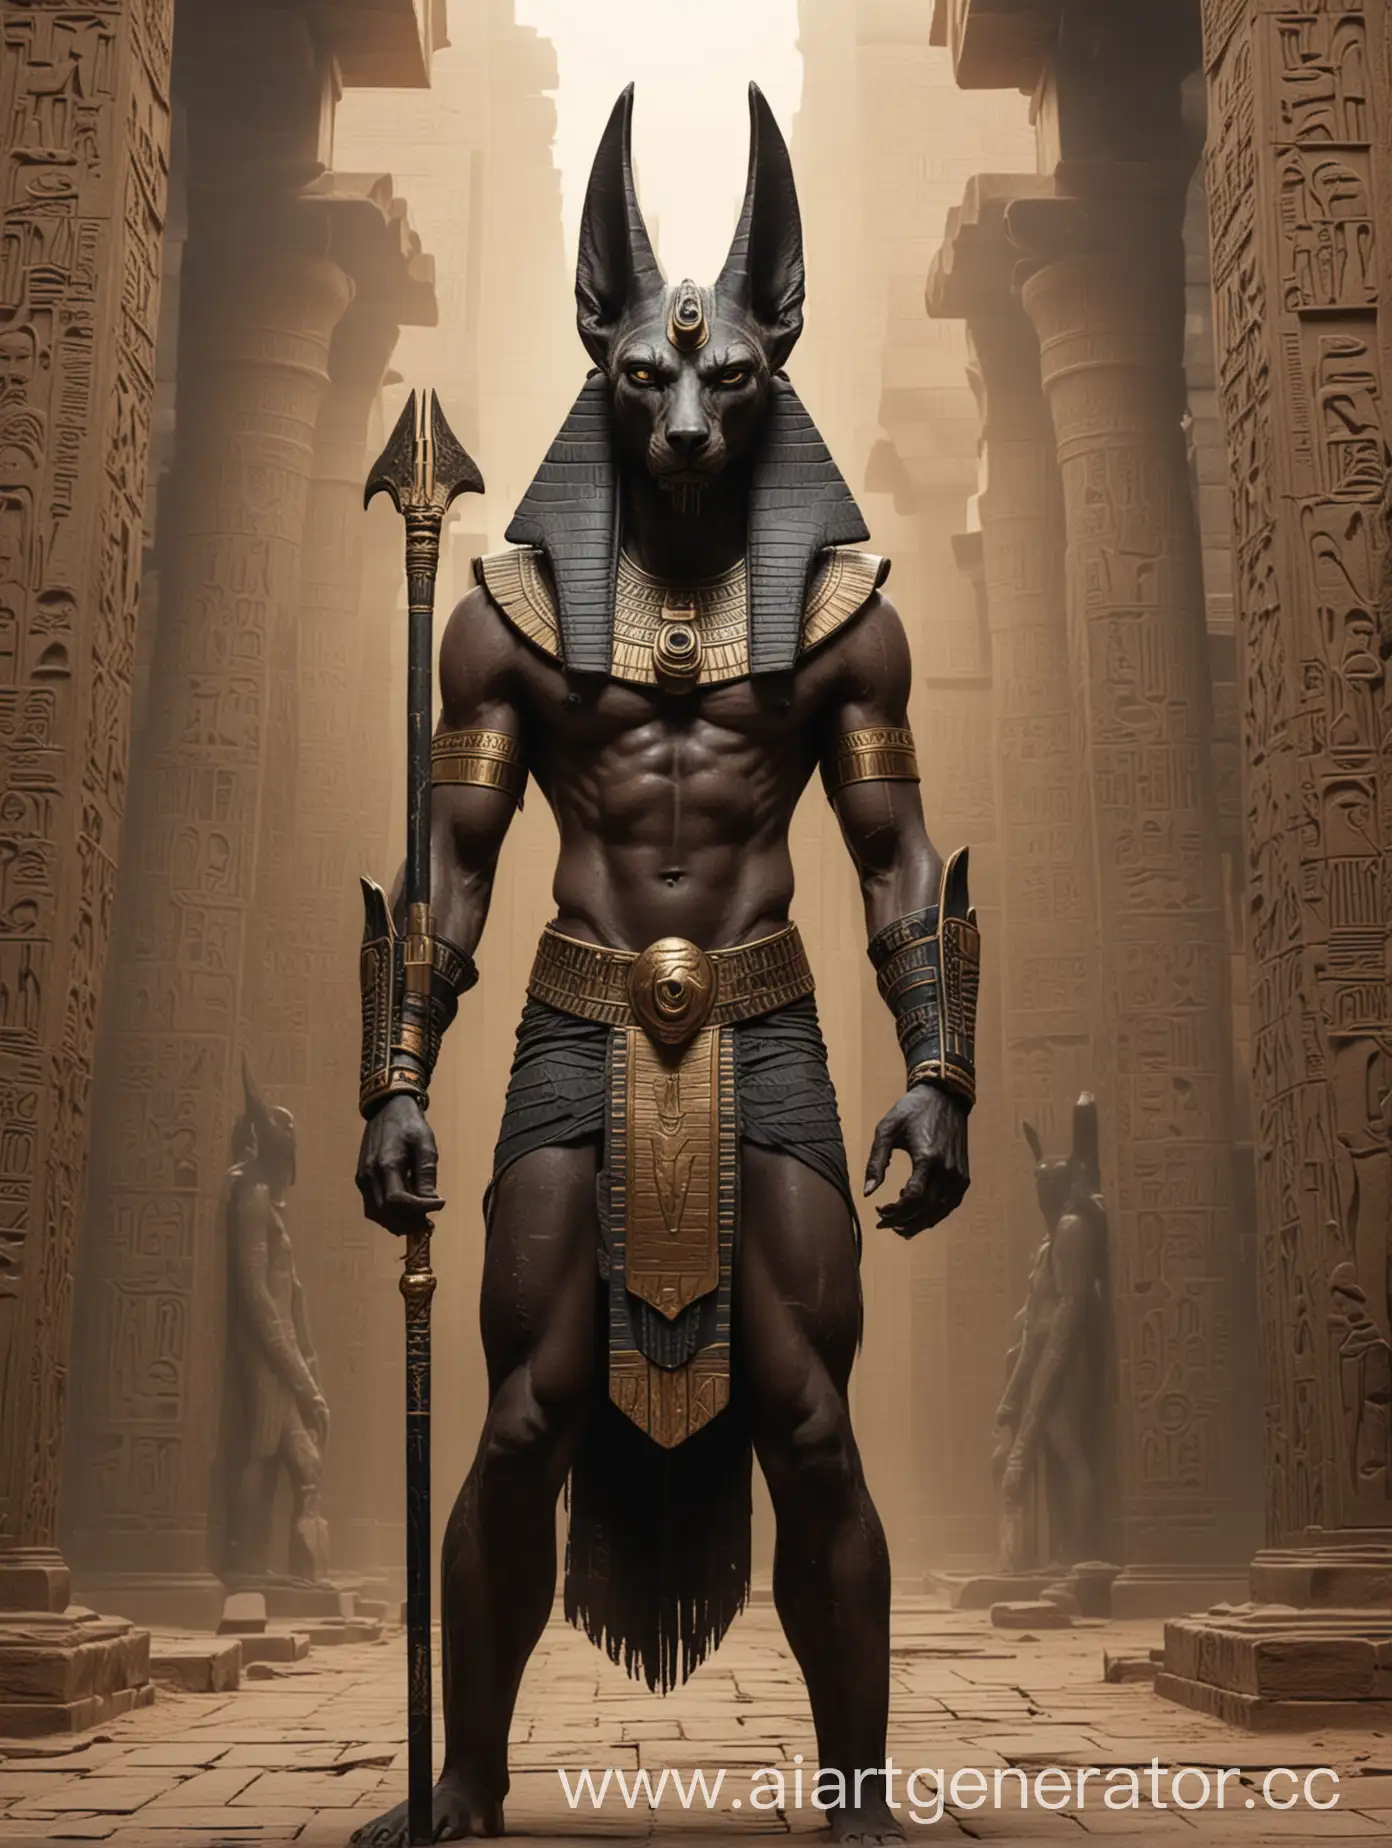 Египетский бог анубис. злой. мрачный. с мордой шакала и спортивным телом. на фоне своего храма 